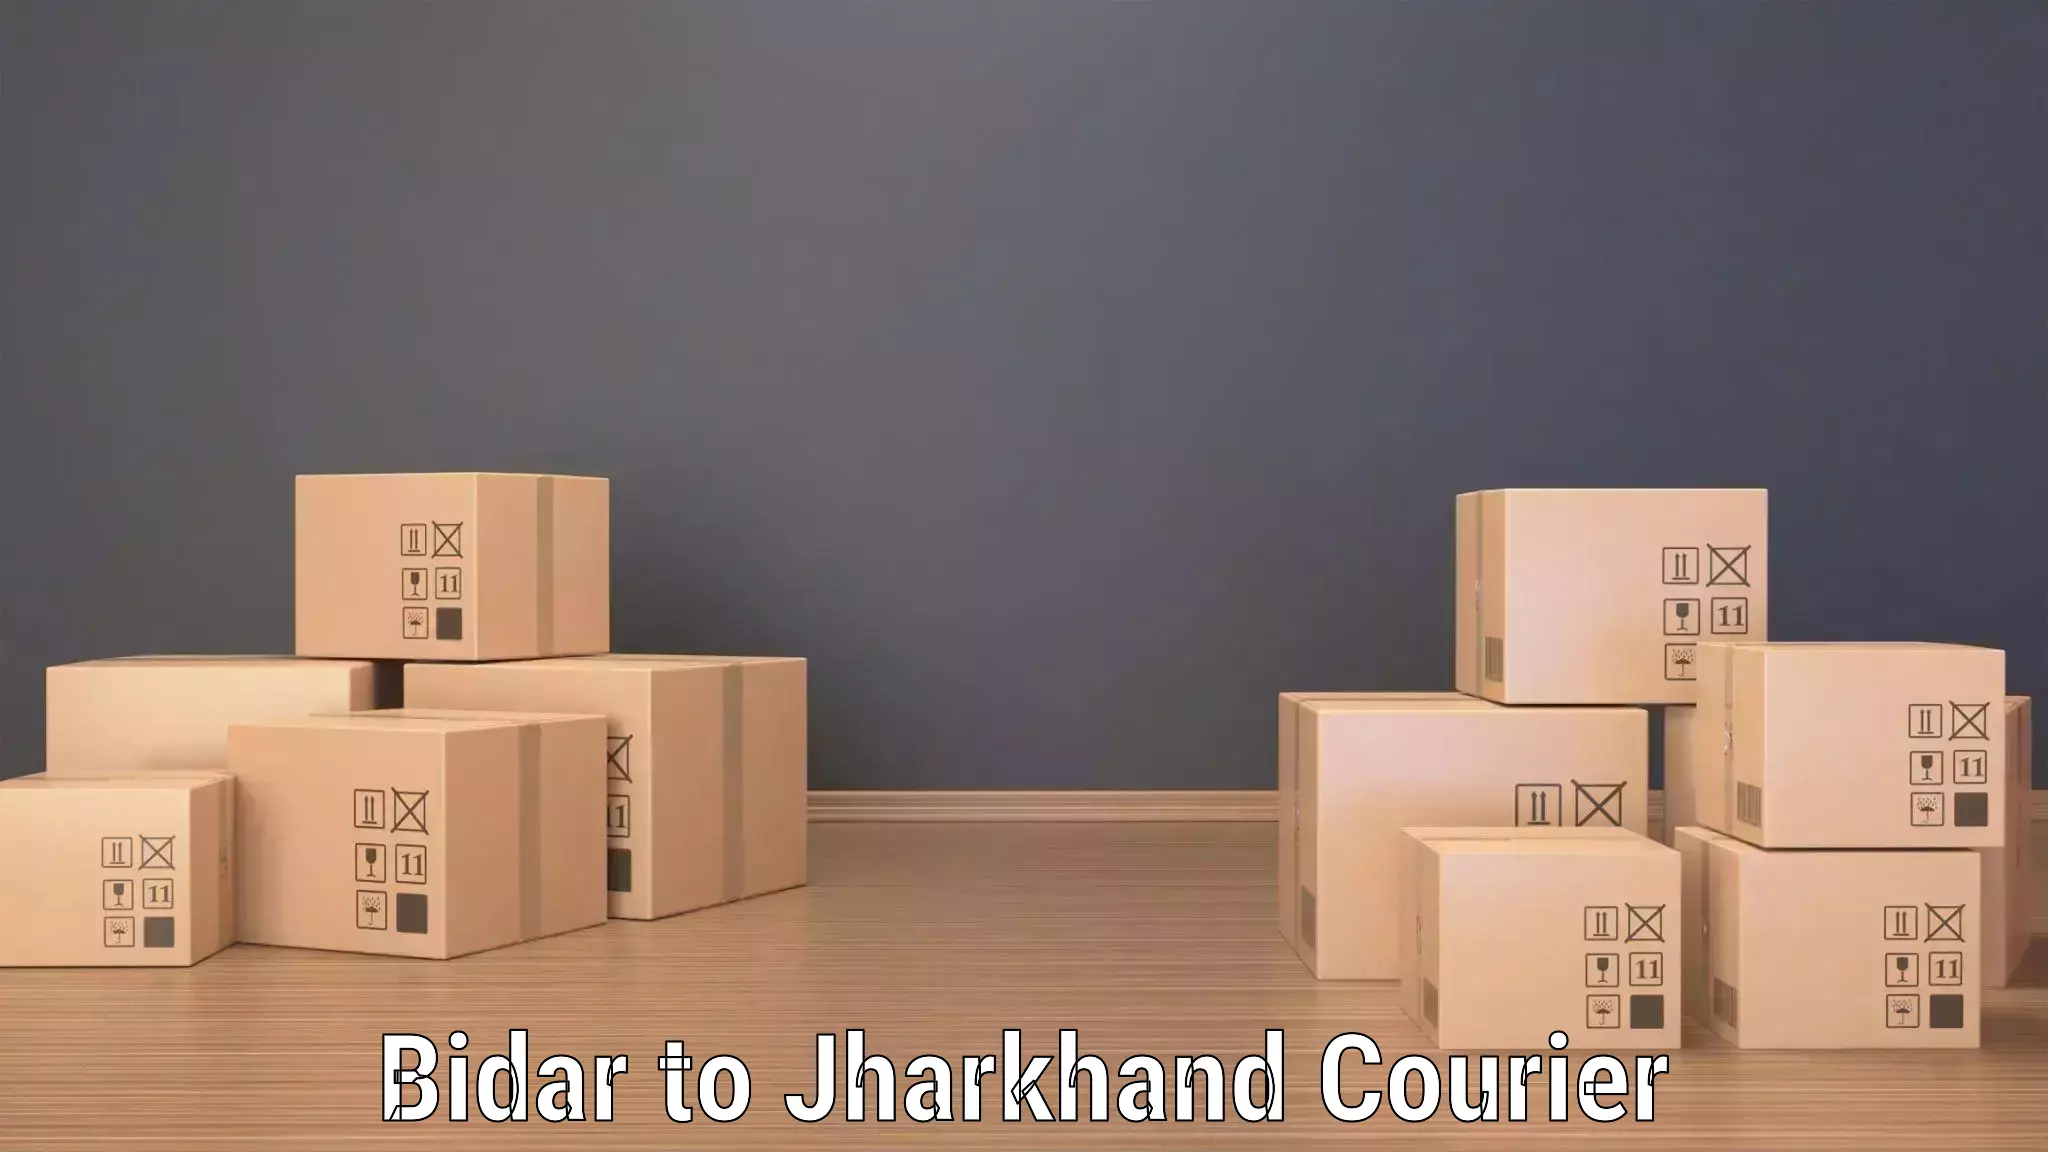 Business shipping needs Bidar to Jamshedpur